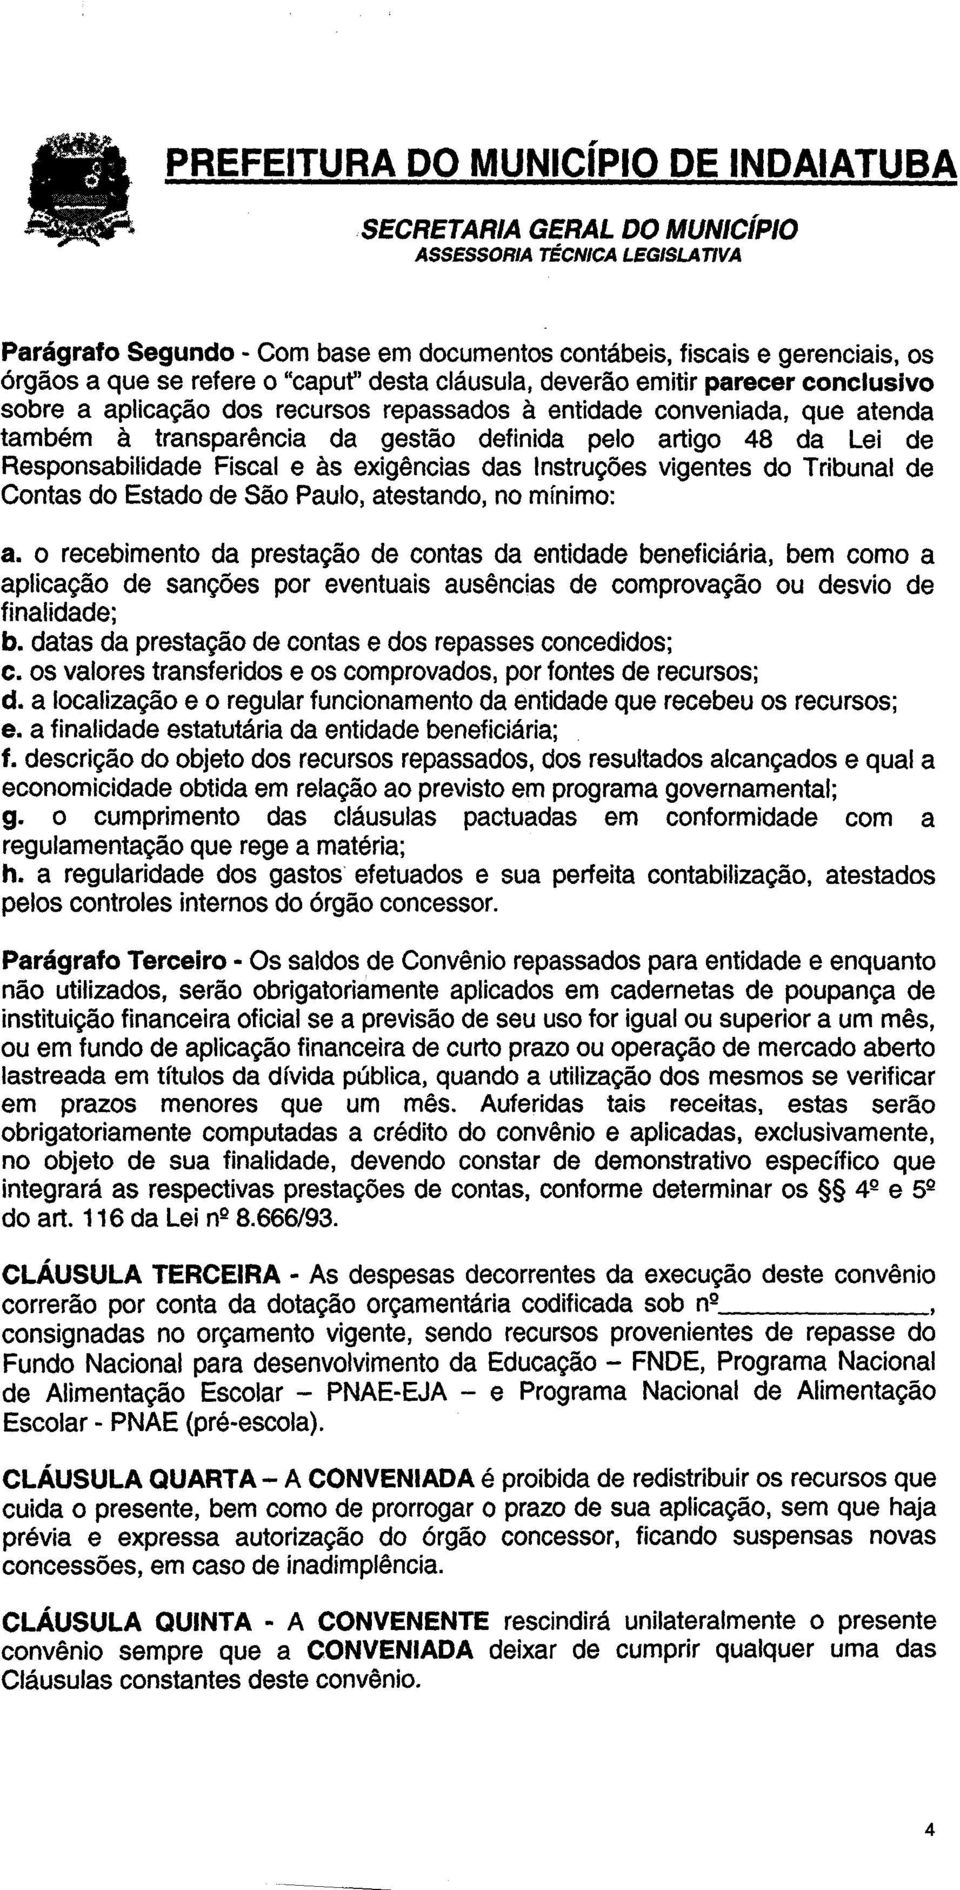 exigencias das Instrugoes vigentes do Tribunal de Contas do Estado de Sao Paulo, atestando, no minimo: a.